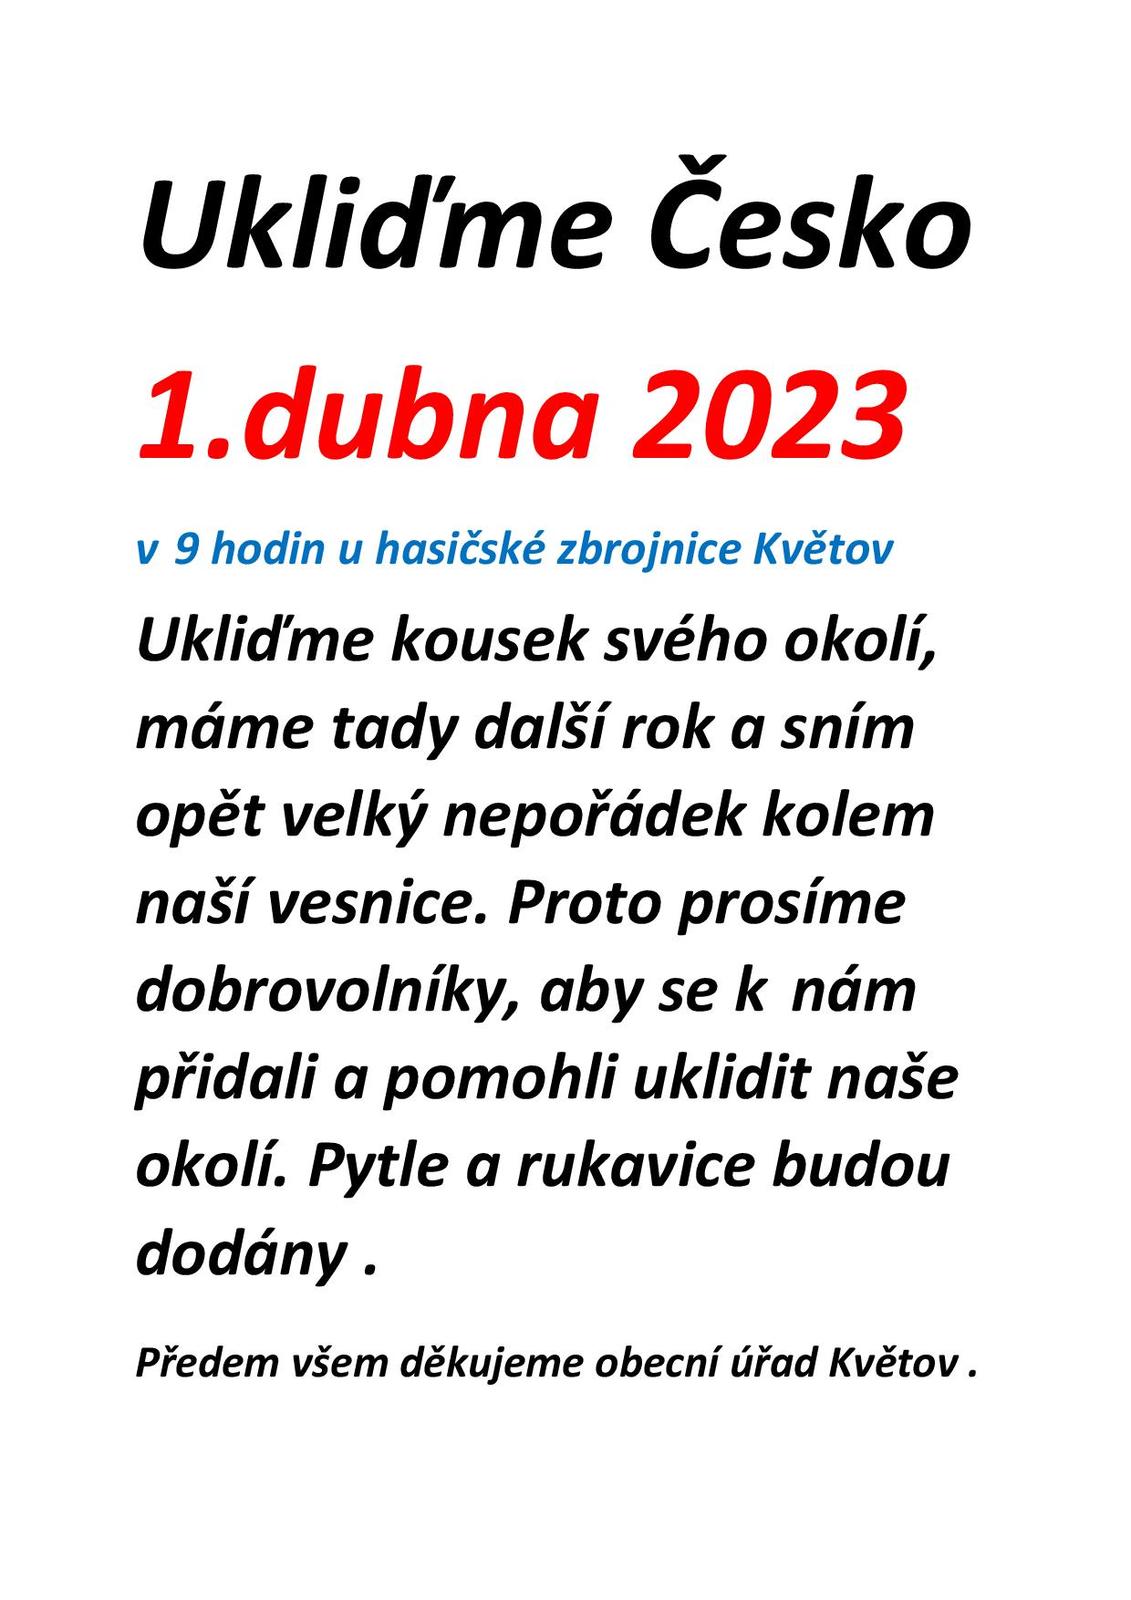 Ukliďme Česko 2023-page-001.jpg